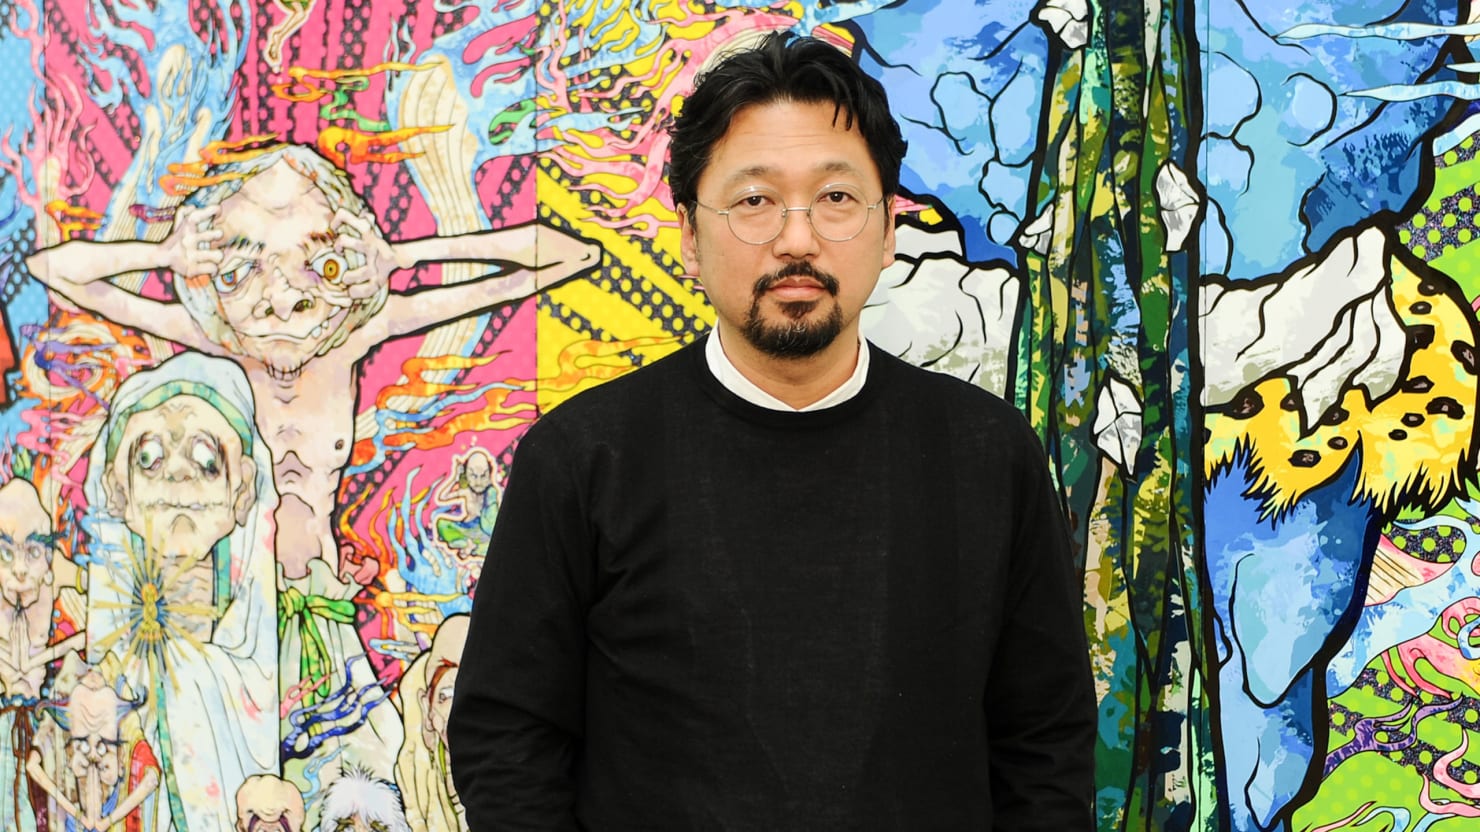 Artist Of The Week - Takashi Murakami